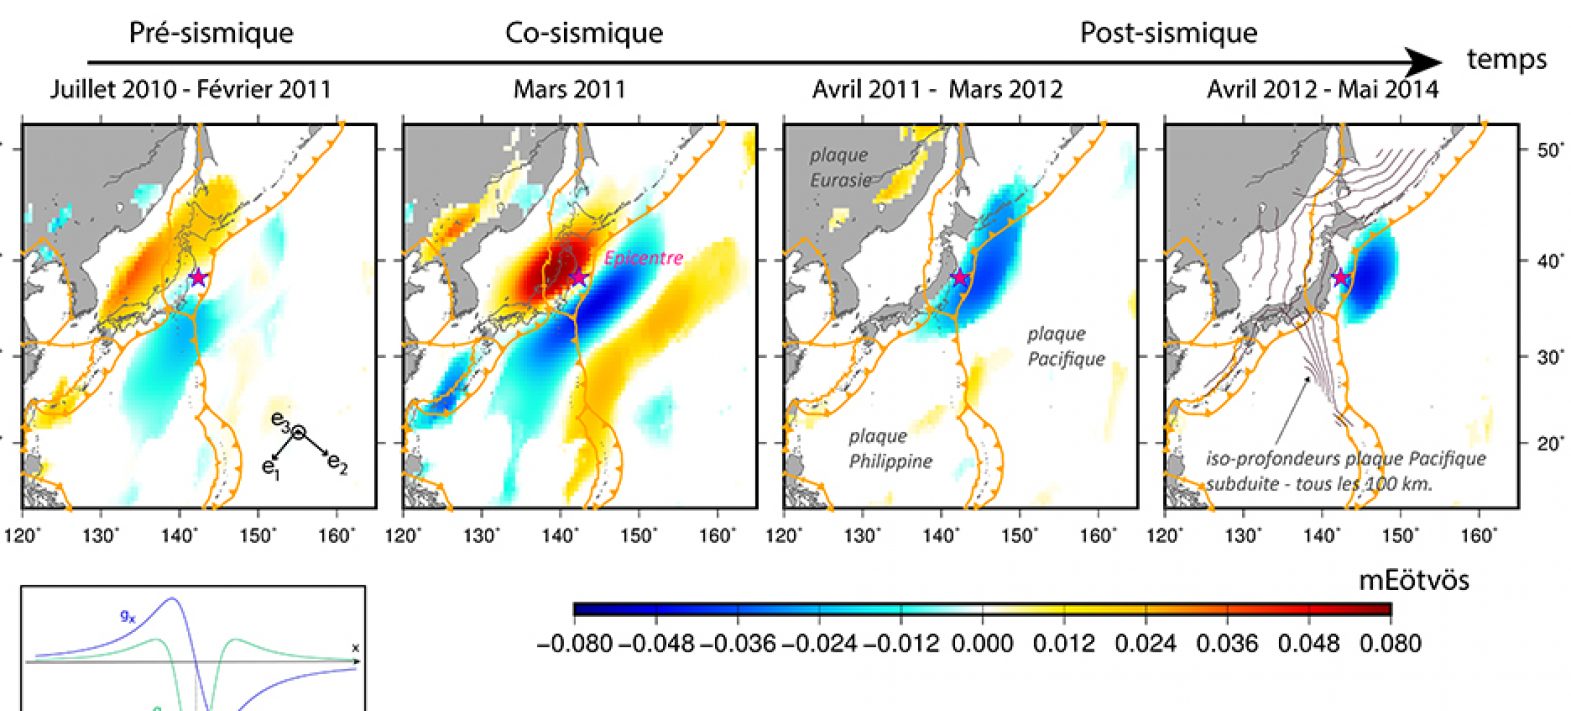 Les données satellitaires gravimétriques mettent en évidence les déformations profondes avant le séisme de Tohoku en 2011